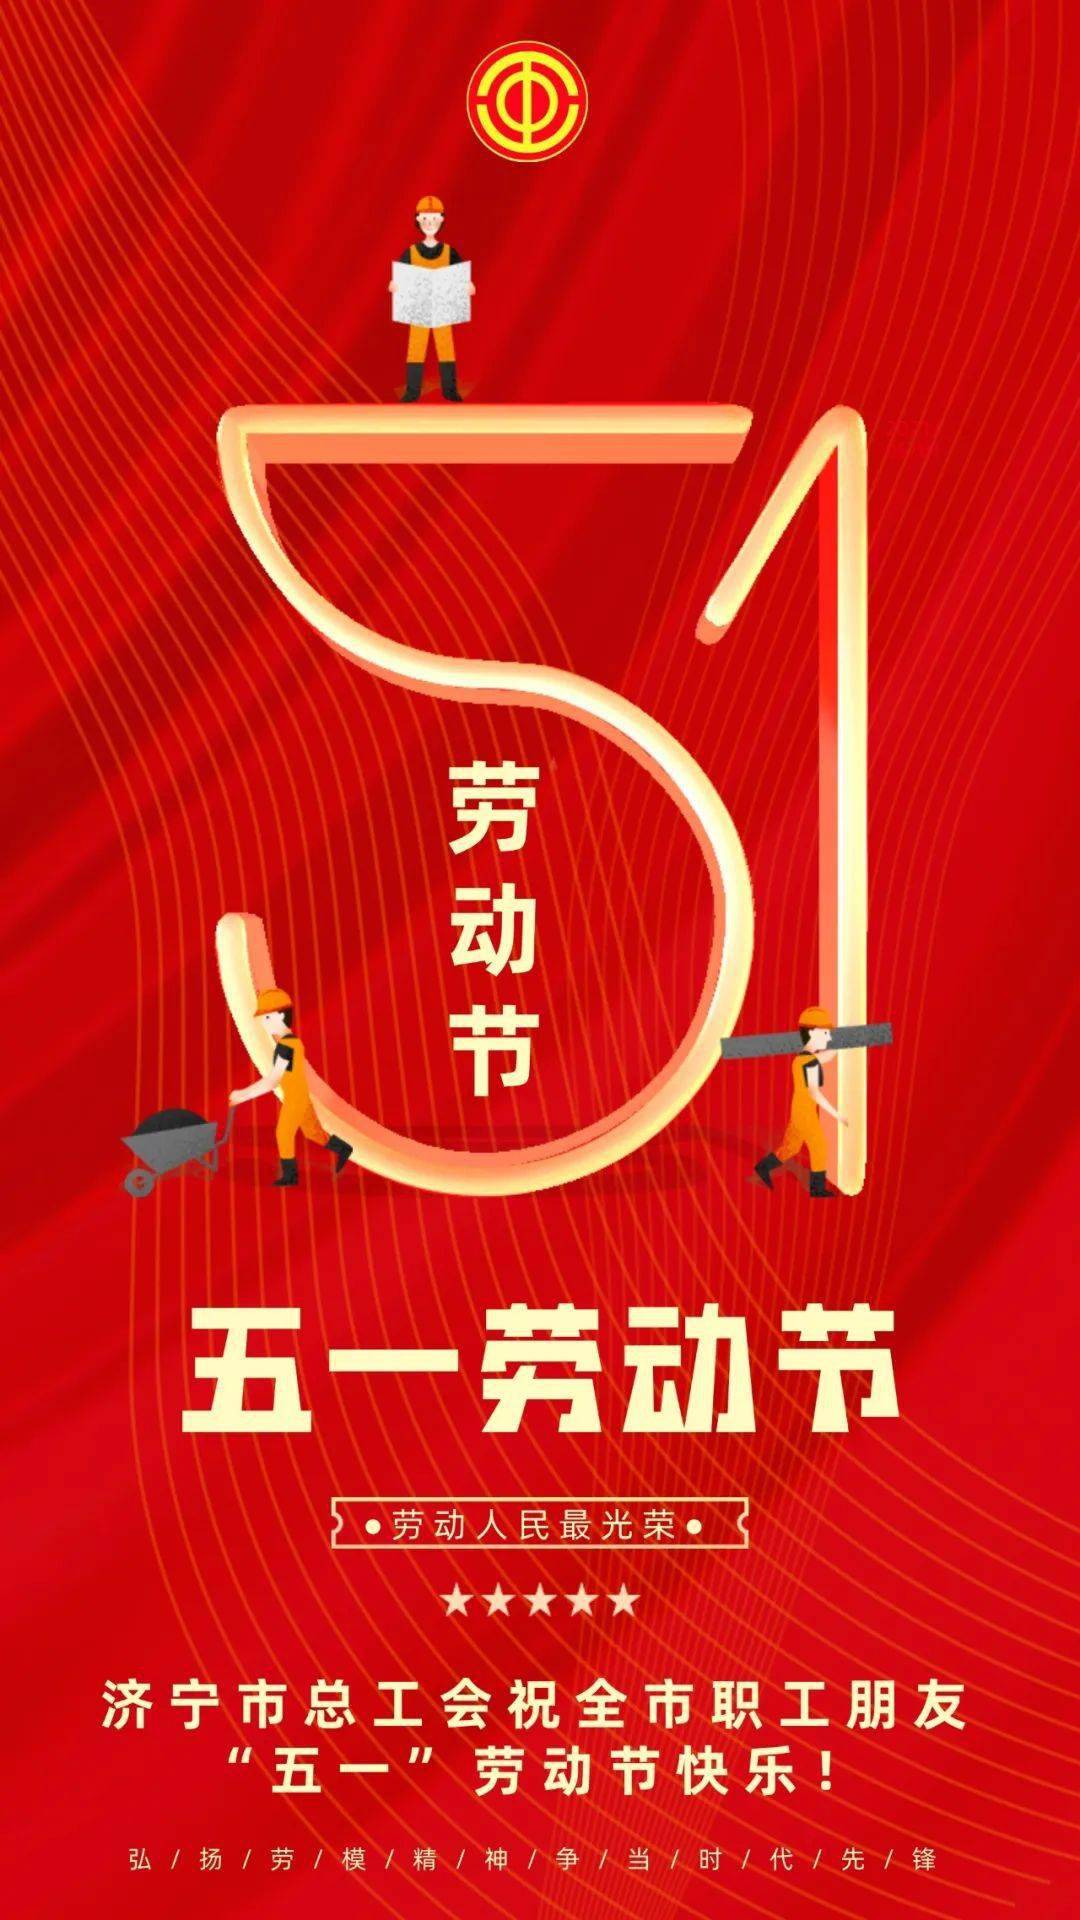 致敬劳动者|济宁市总工会祝全市职工朋友"五一"劳动节快乐!